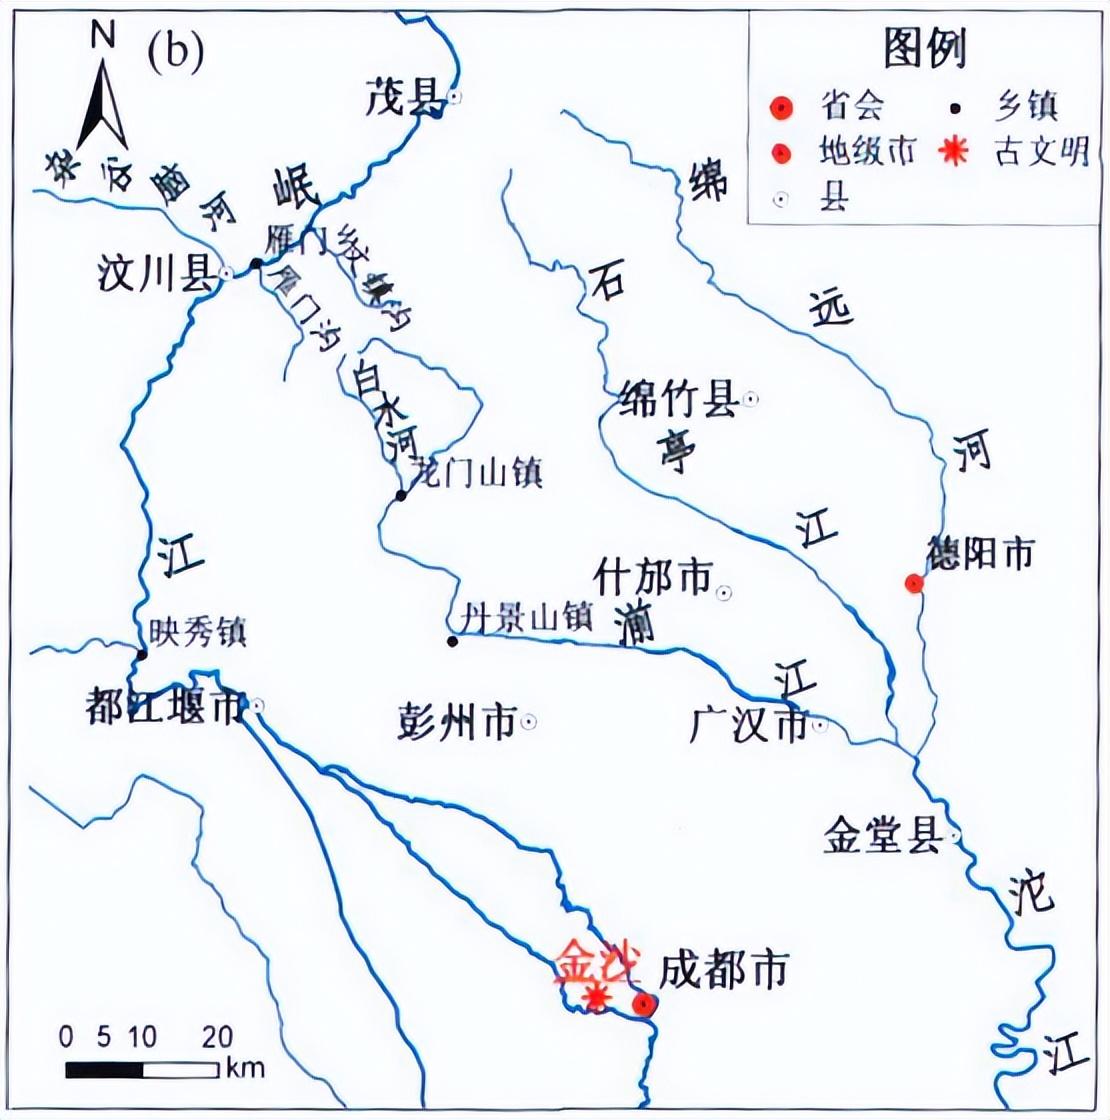 公元前1099年的汶川地震,导致岷江改流,进而导致三星堆消亡